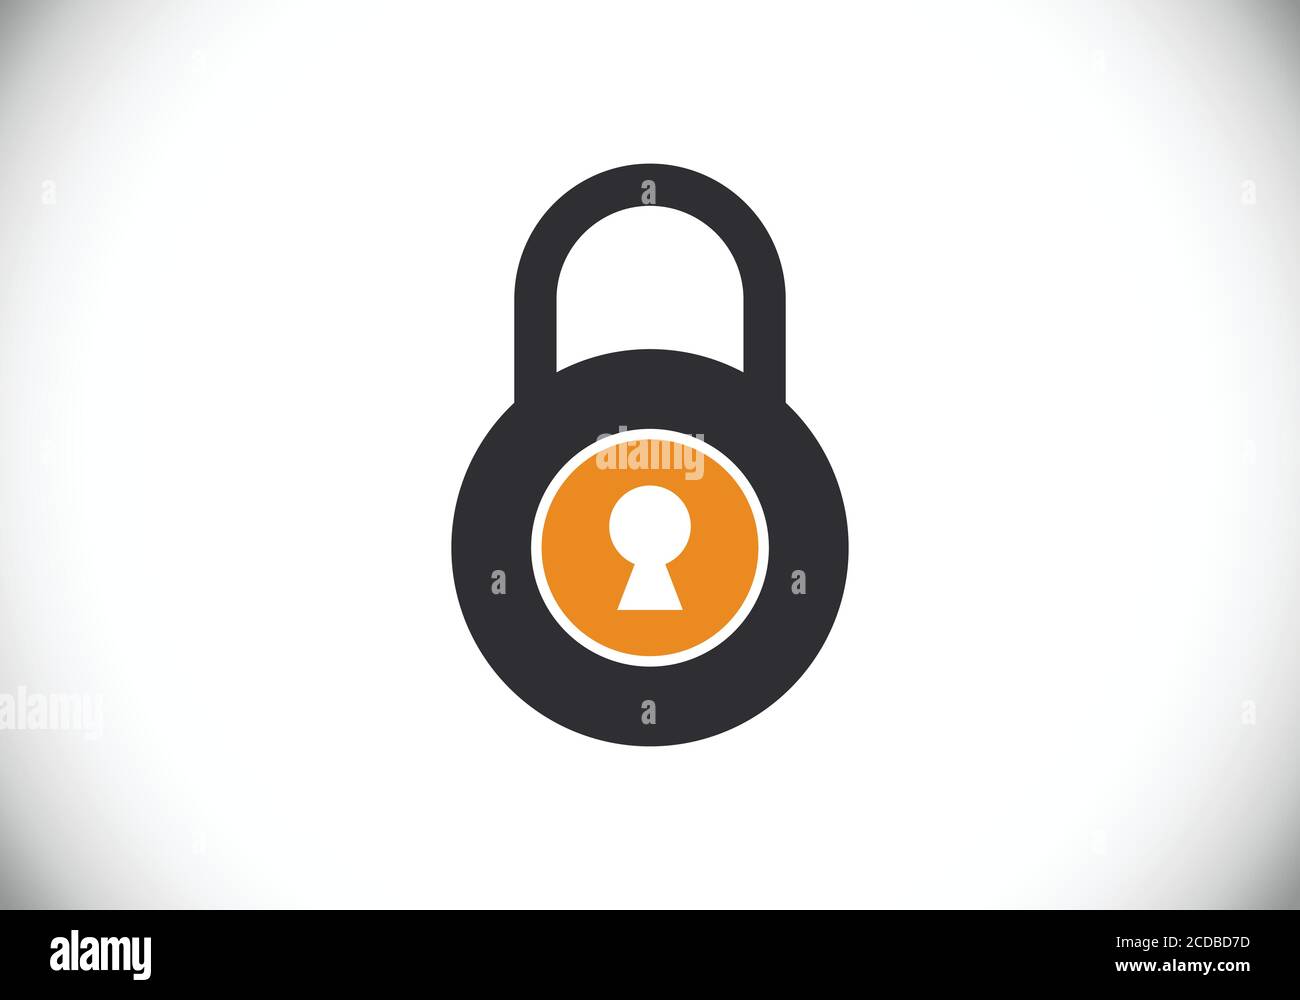 Lock logo immagini e fotografie stock ad alta risoluzione - Alamy